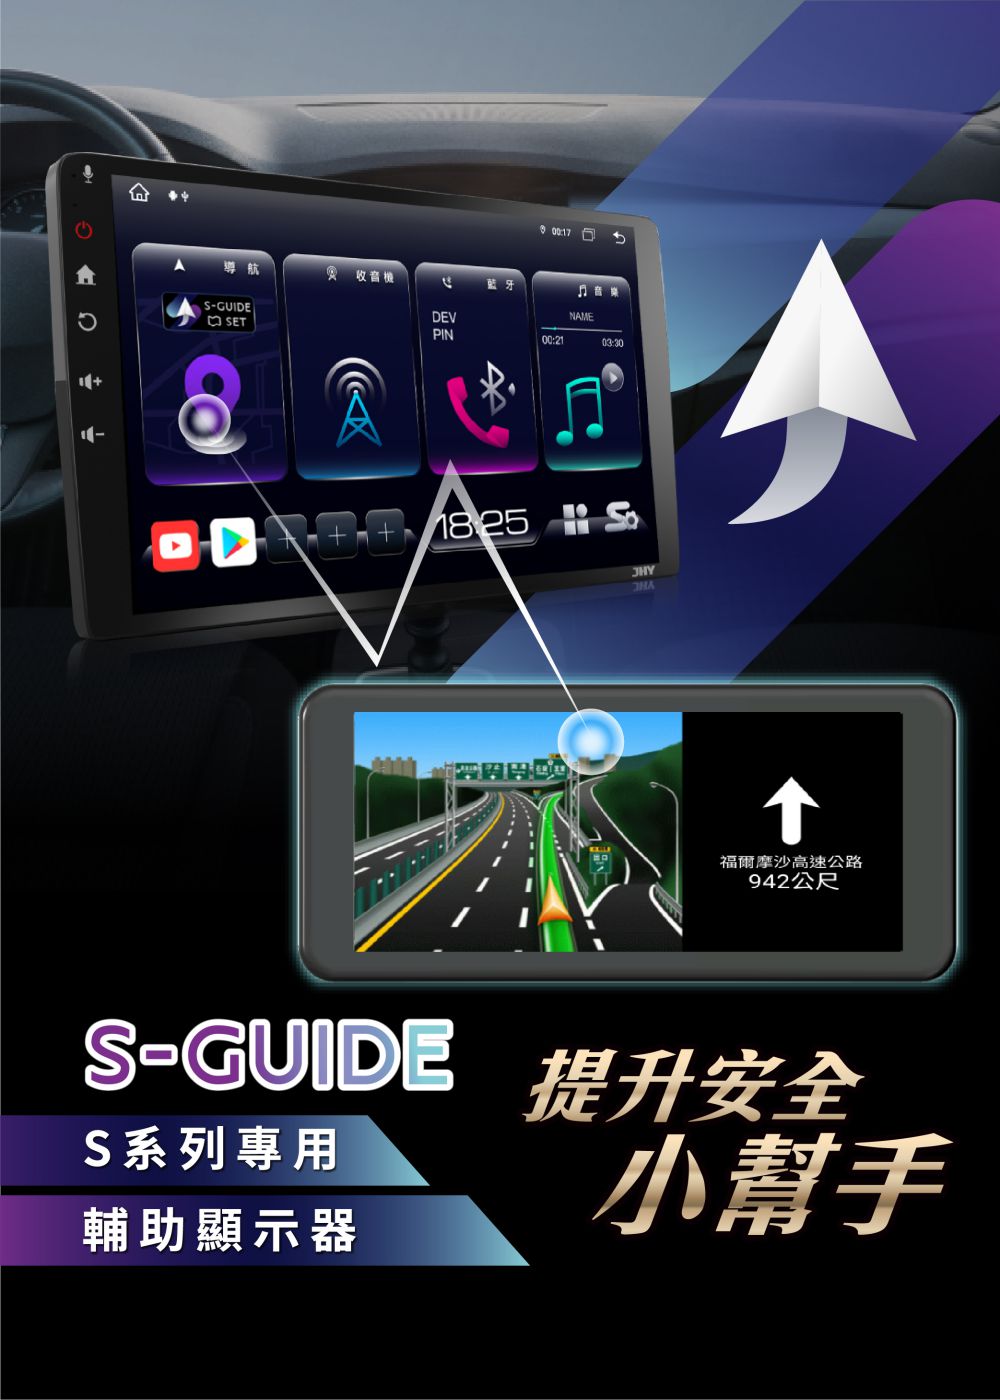 S-GUIDE，S系列專用輔助顯示器